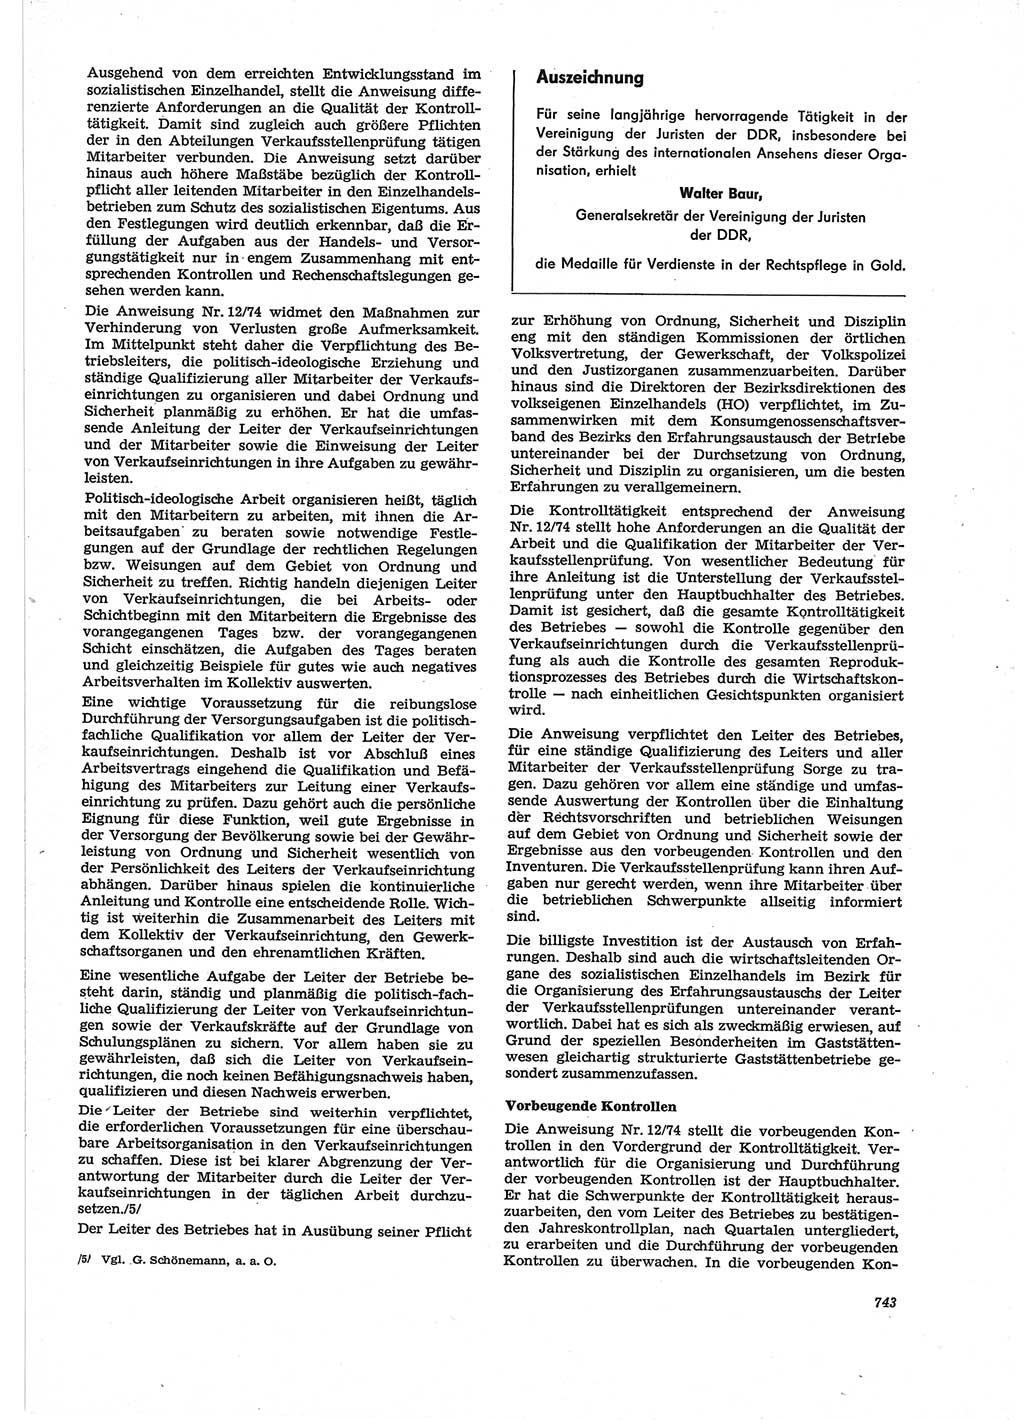 Neue Justiz (NJ), Zeitschrift für Recht und Rechtswissenschaft [Deutsche Demokratische Republik (DDR)], 28. Jahrgang 1974, Seite 743 (NJ DDR 1974, S. 743)